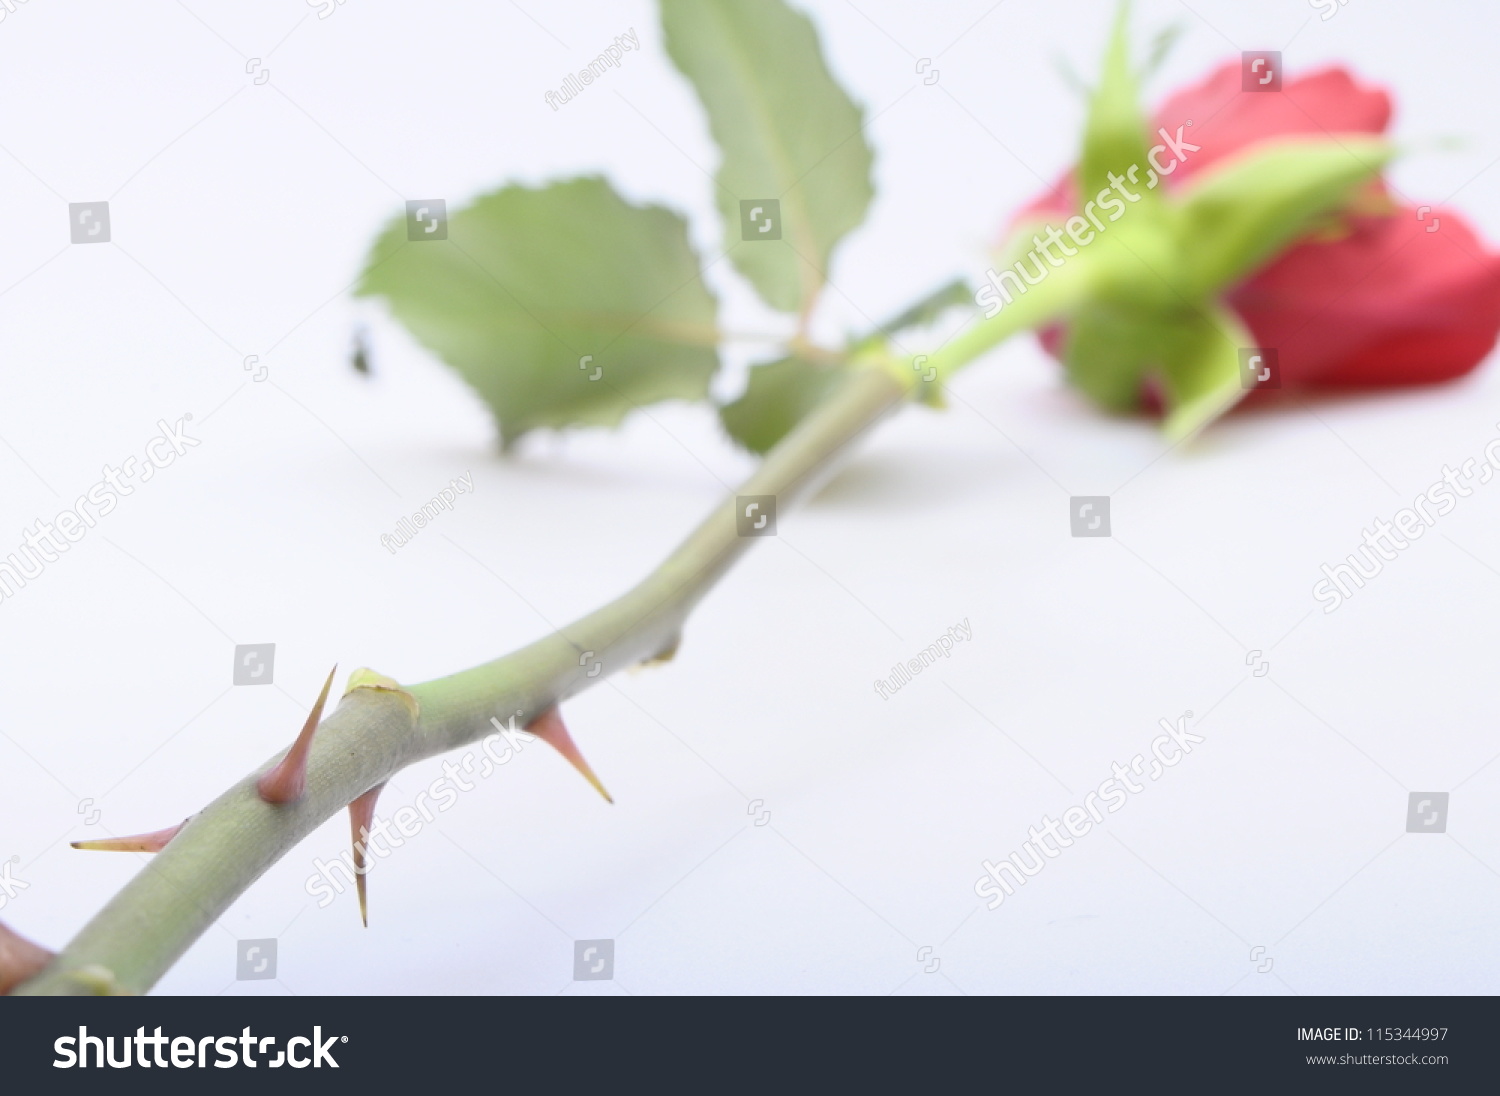 Роза с шипами